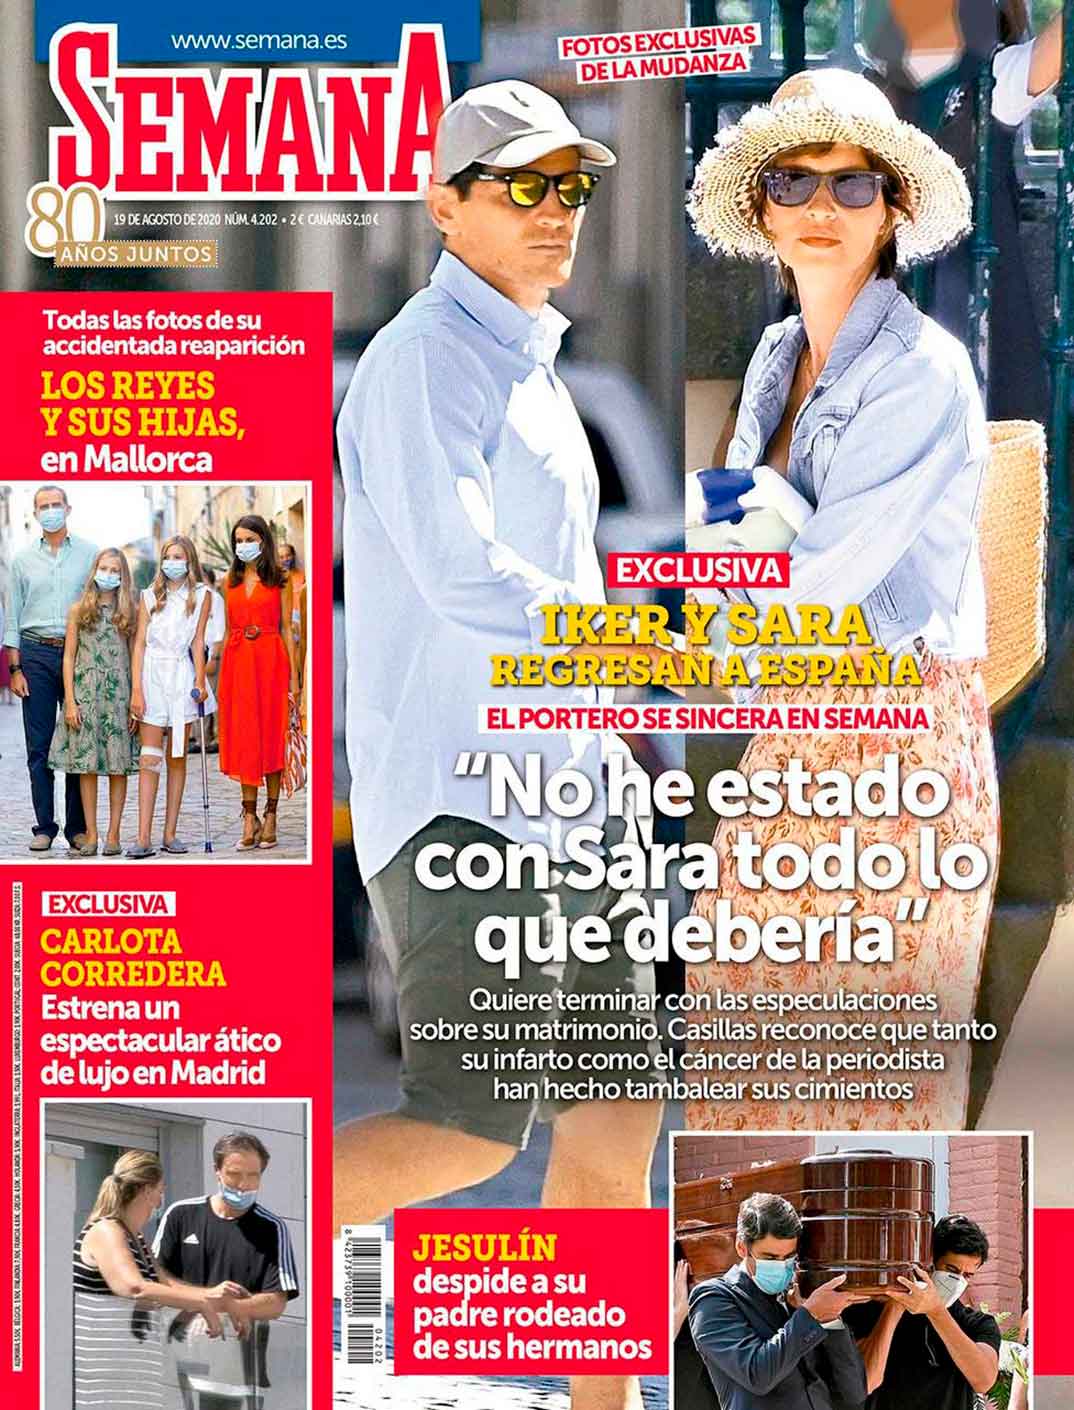 Iker Casillas y Sara Carbonero - Revista Semana